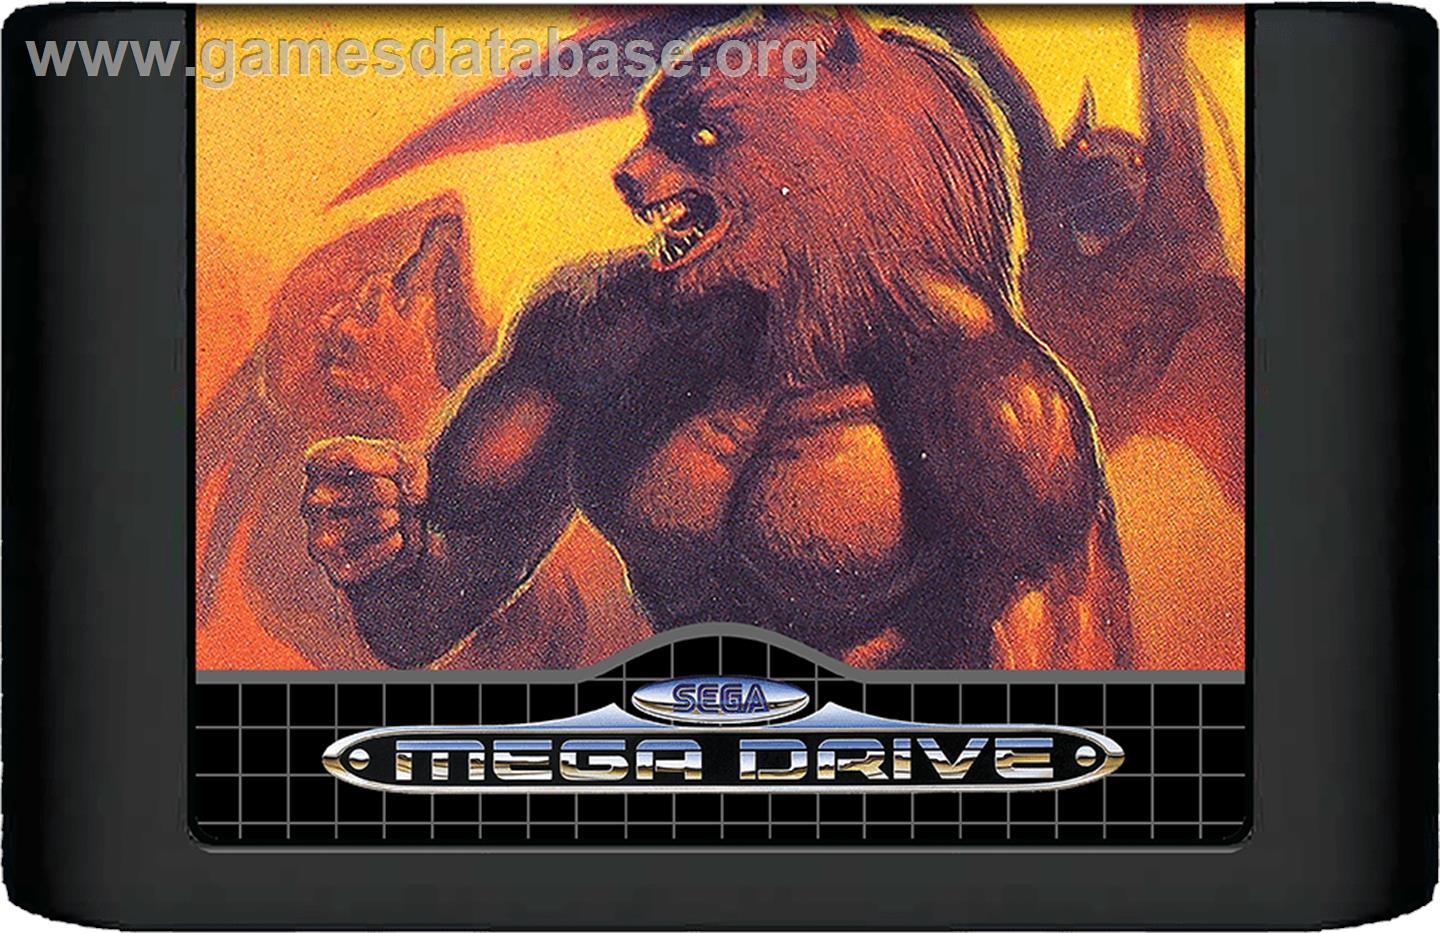 Altered Beast - Sega Genesis - Artwork - Cartridge